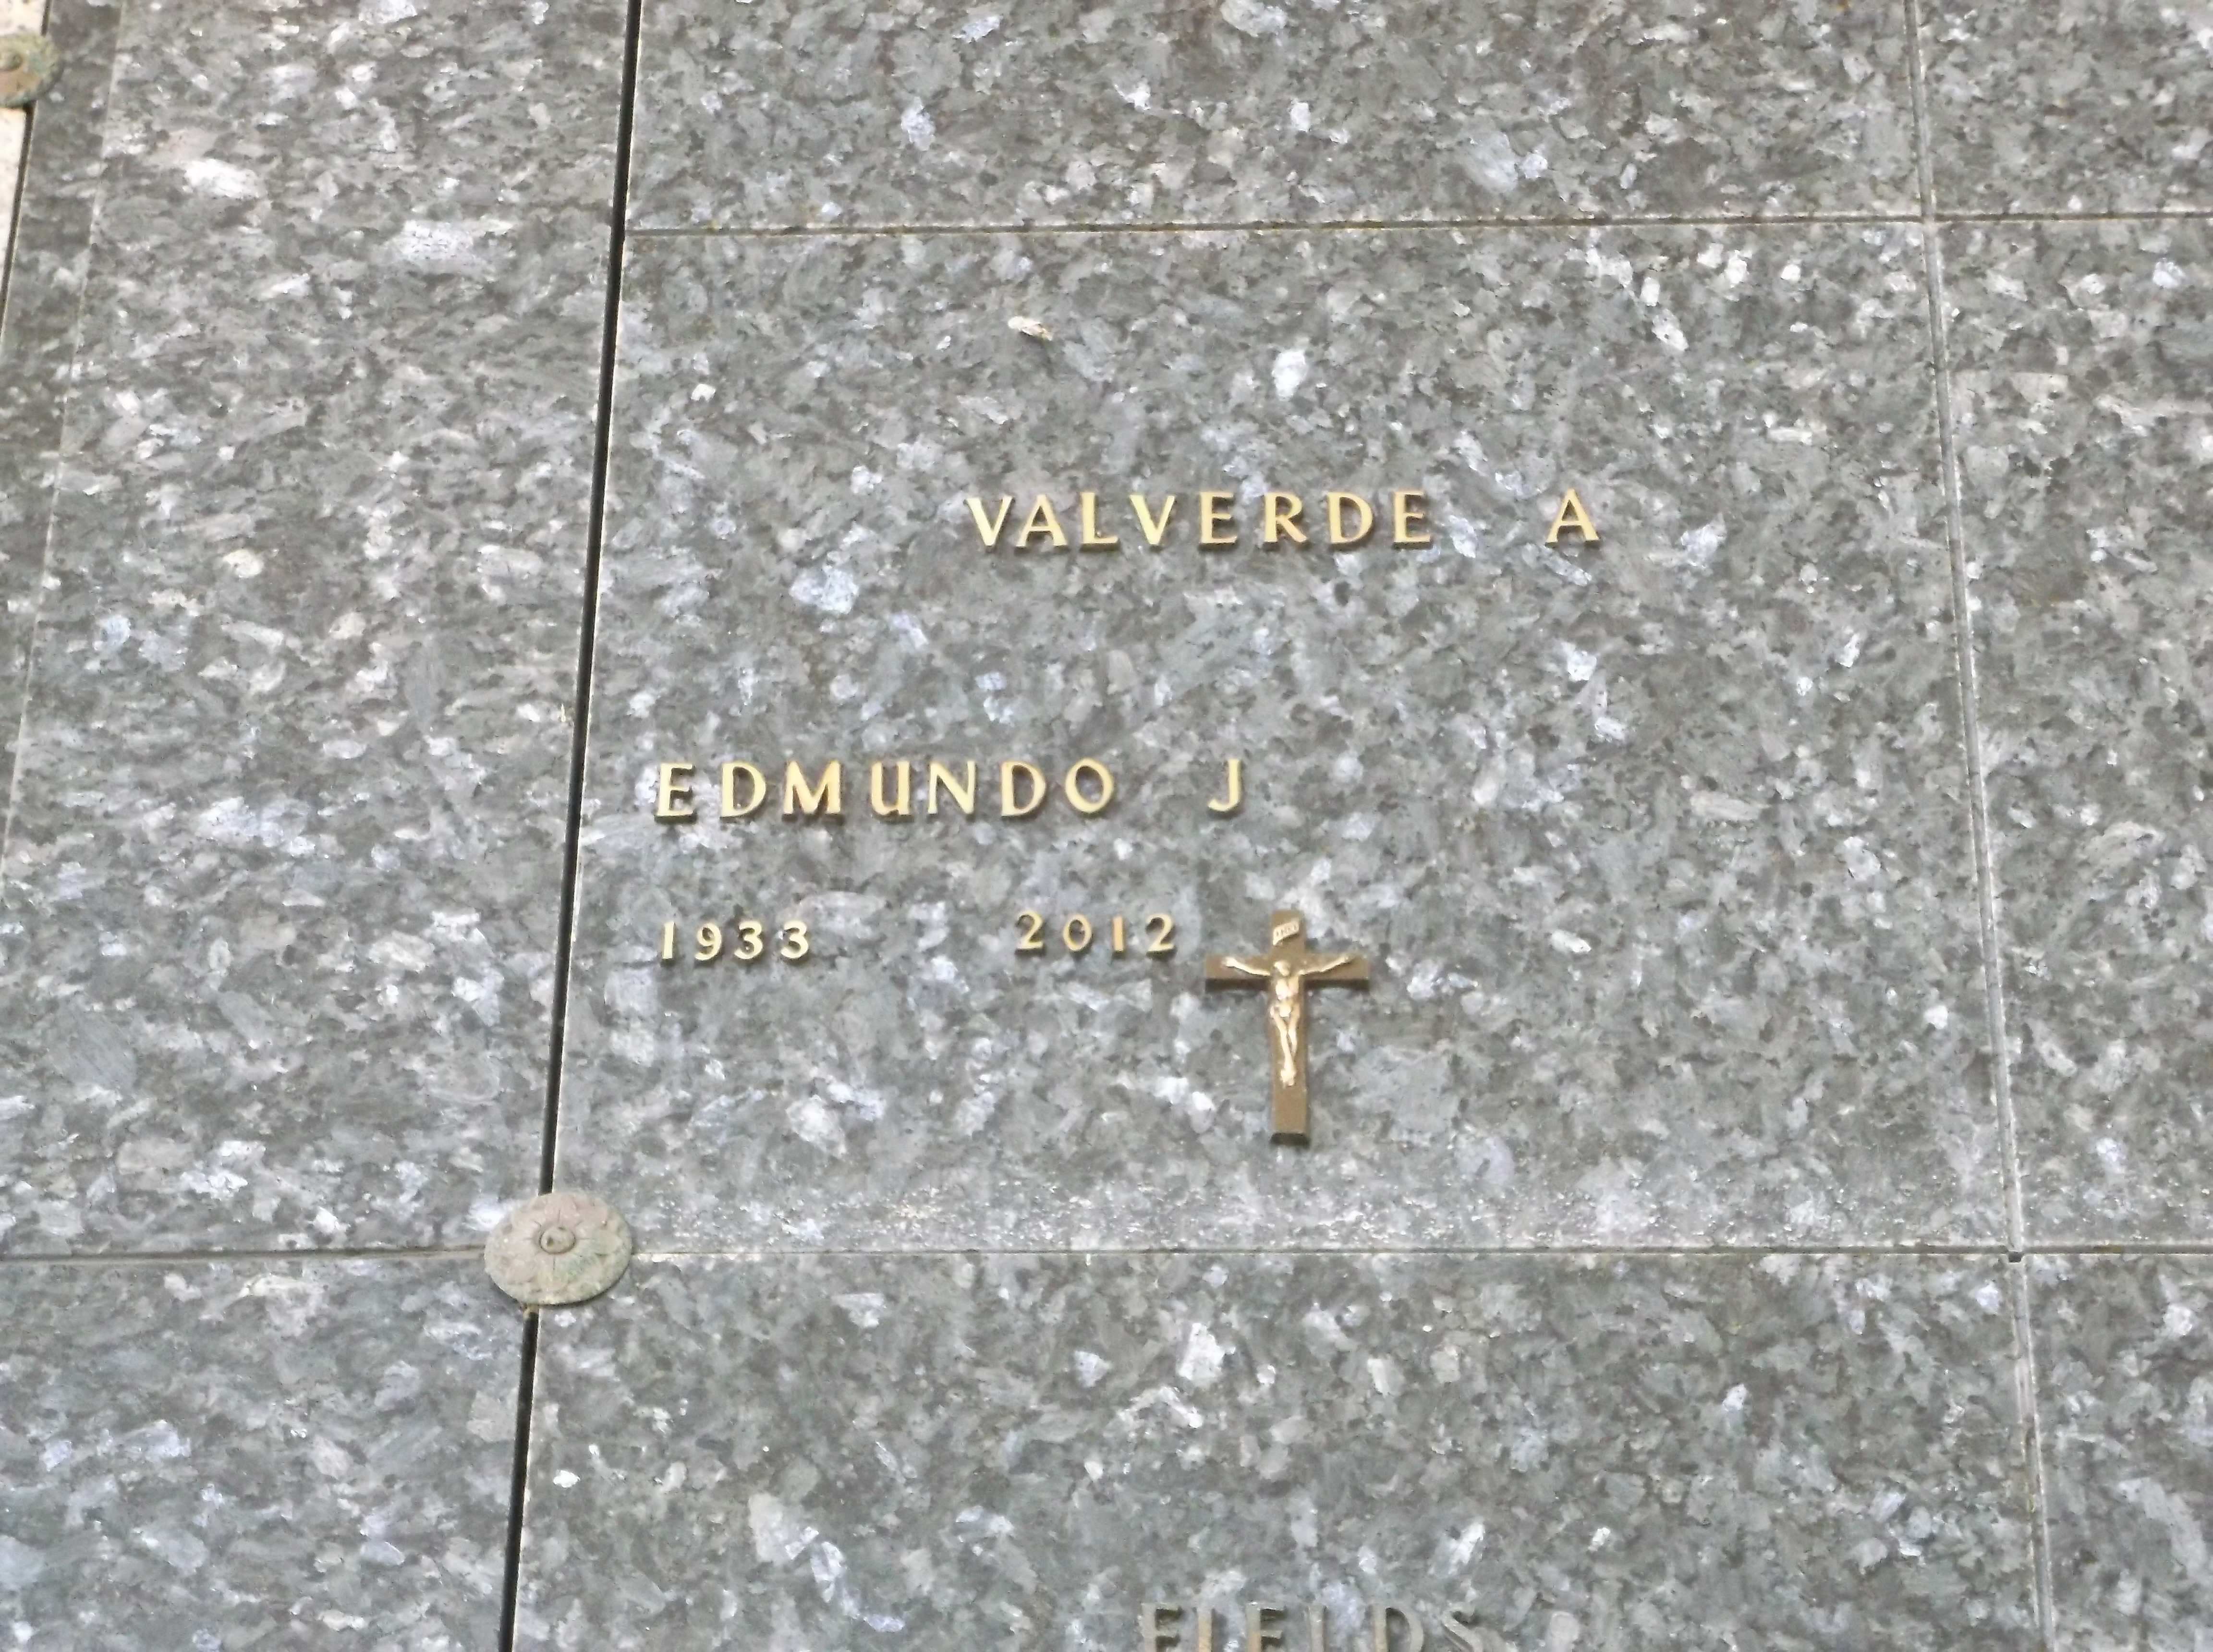 Edmundo J Valverde